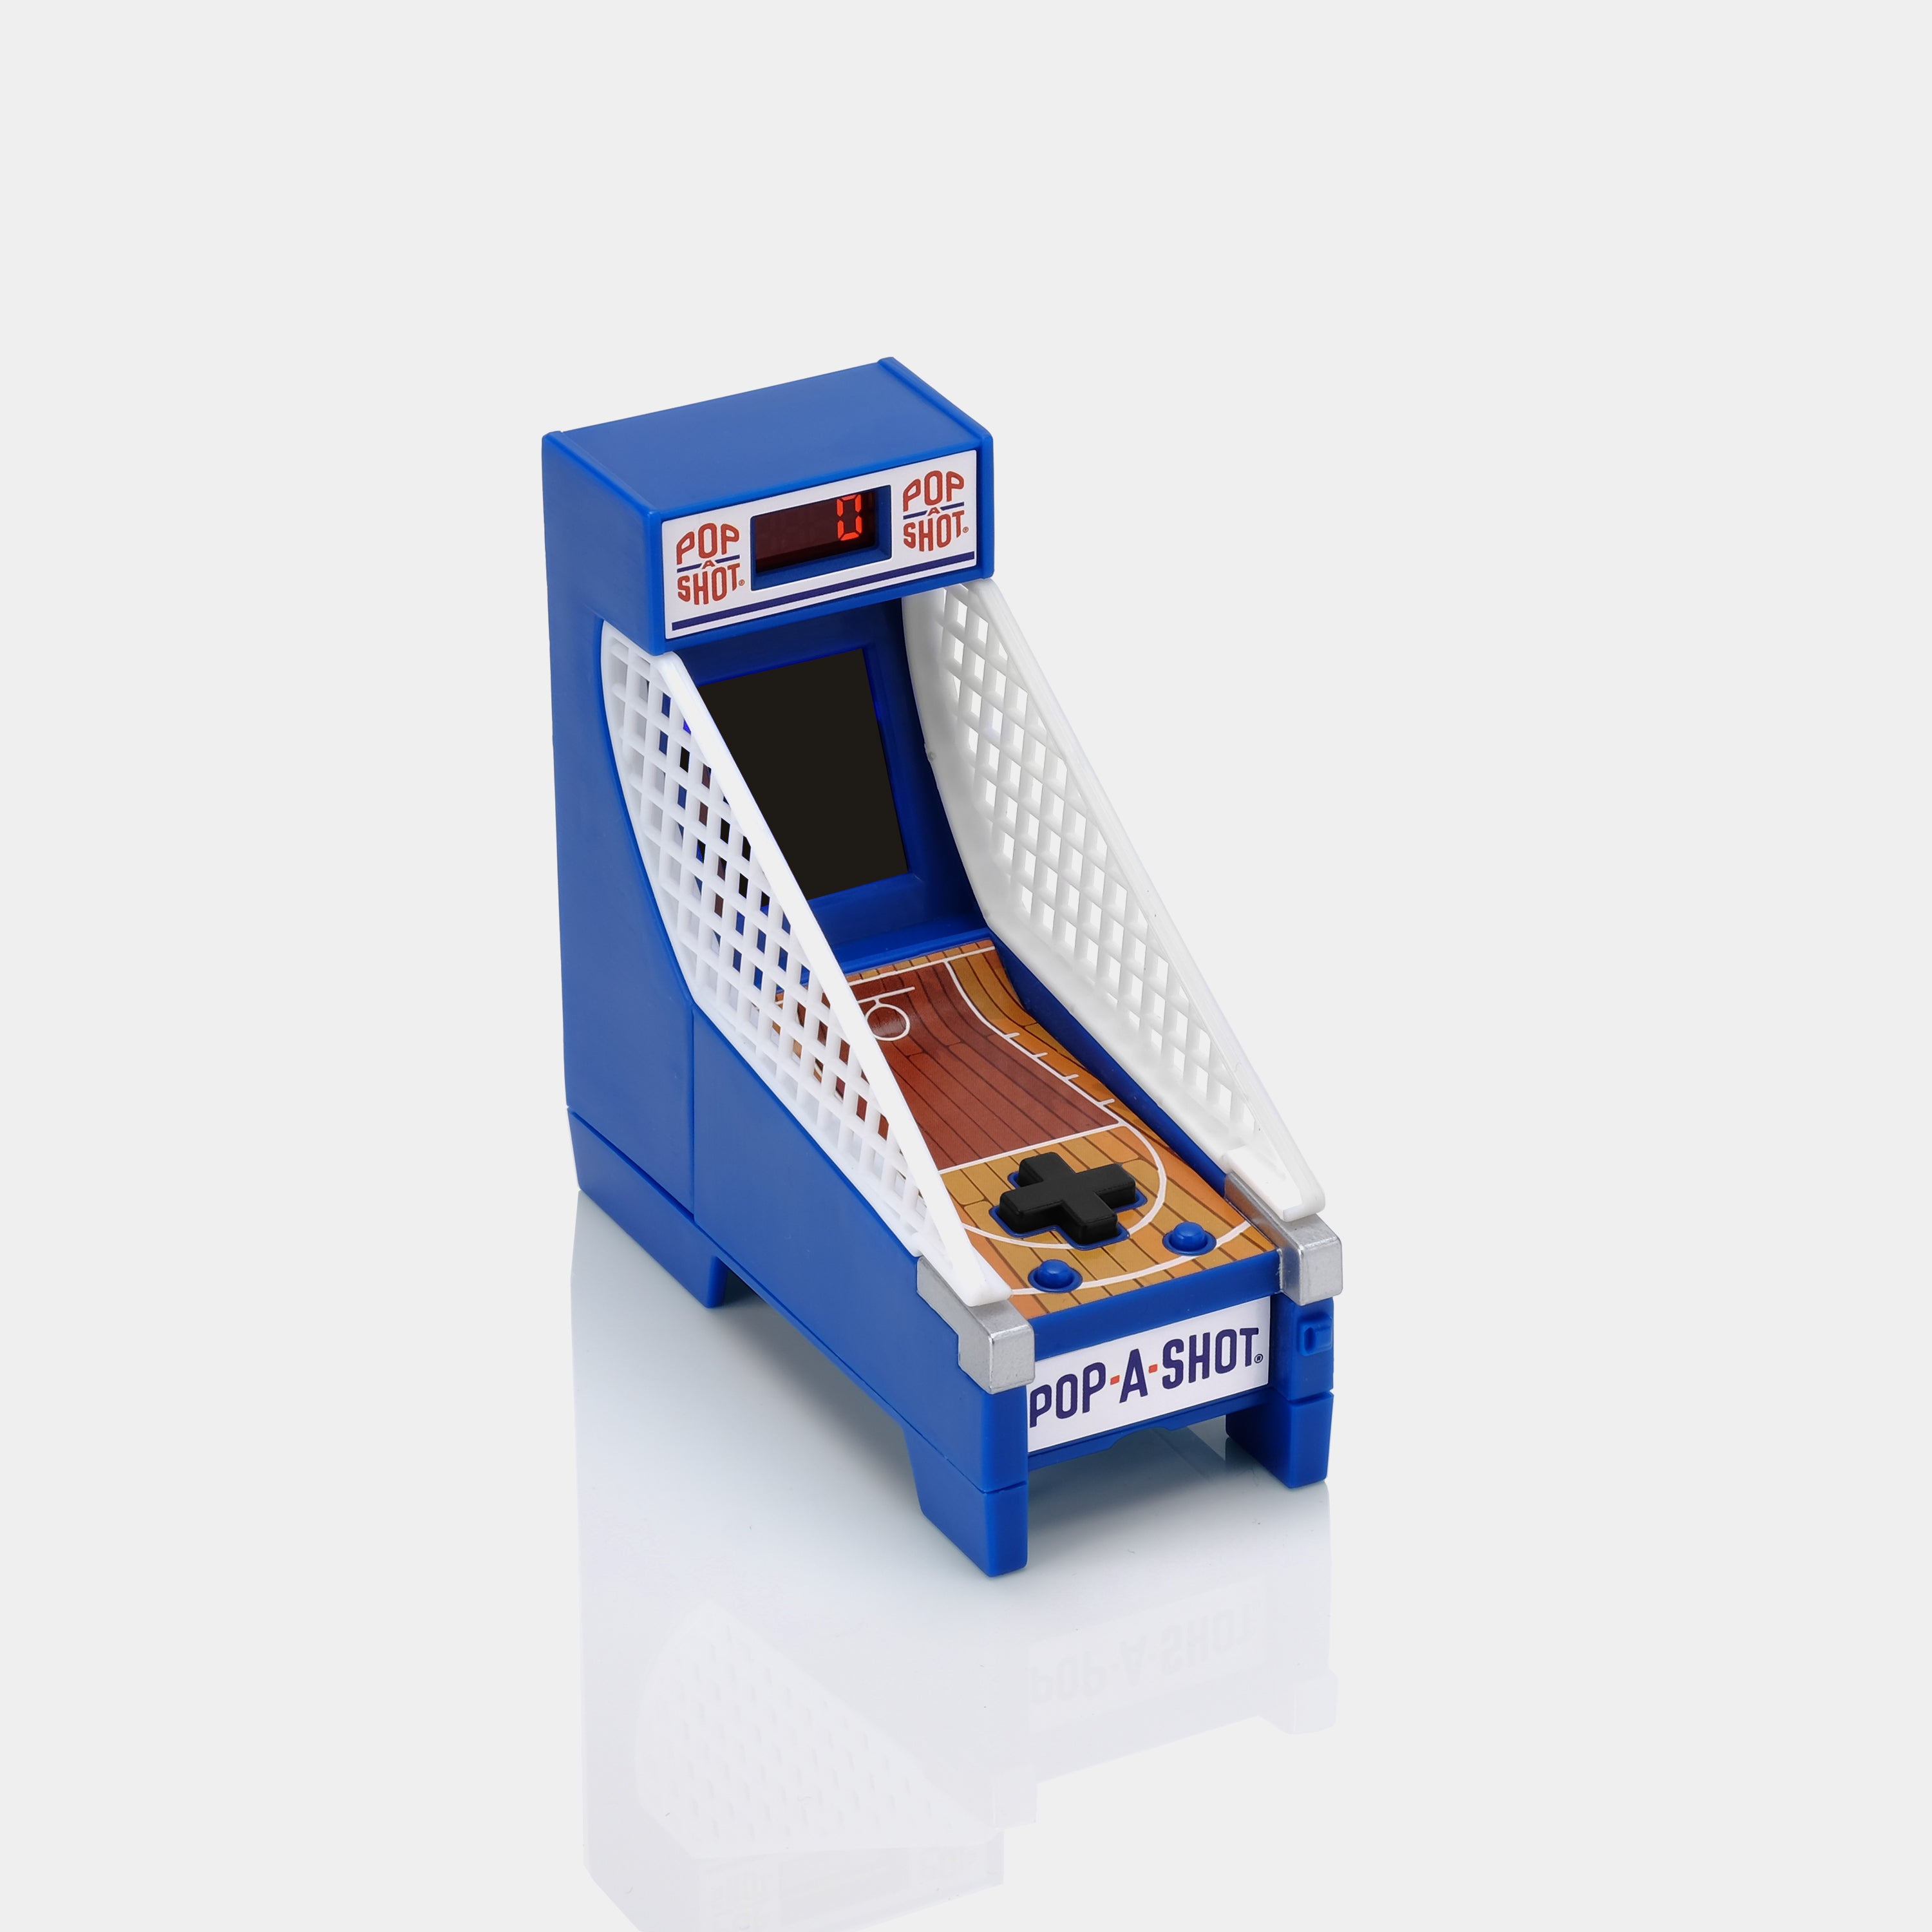 Boardwalk Arcade Pop-A-Shot Game